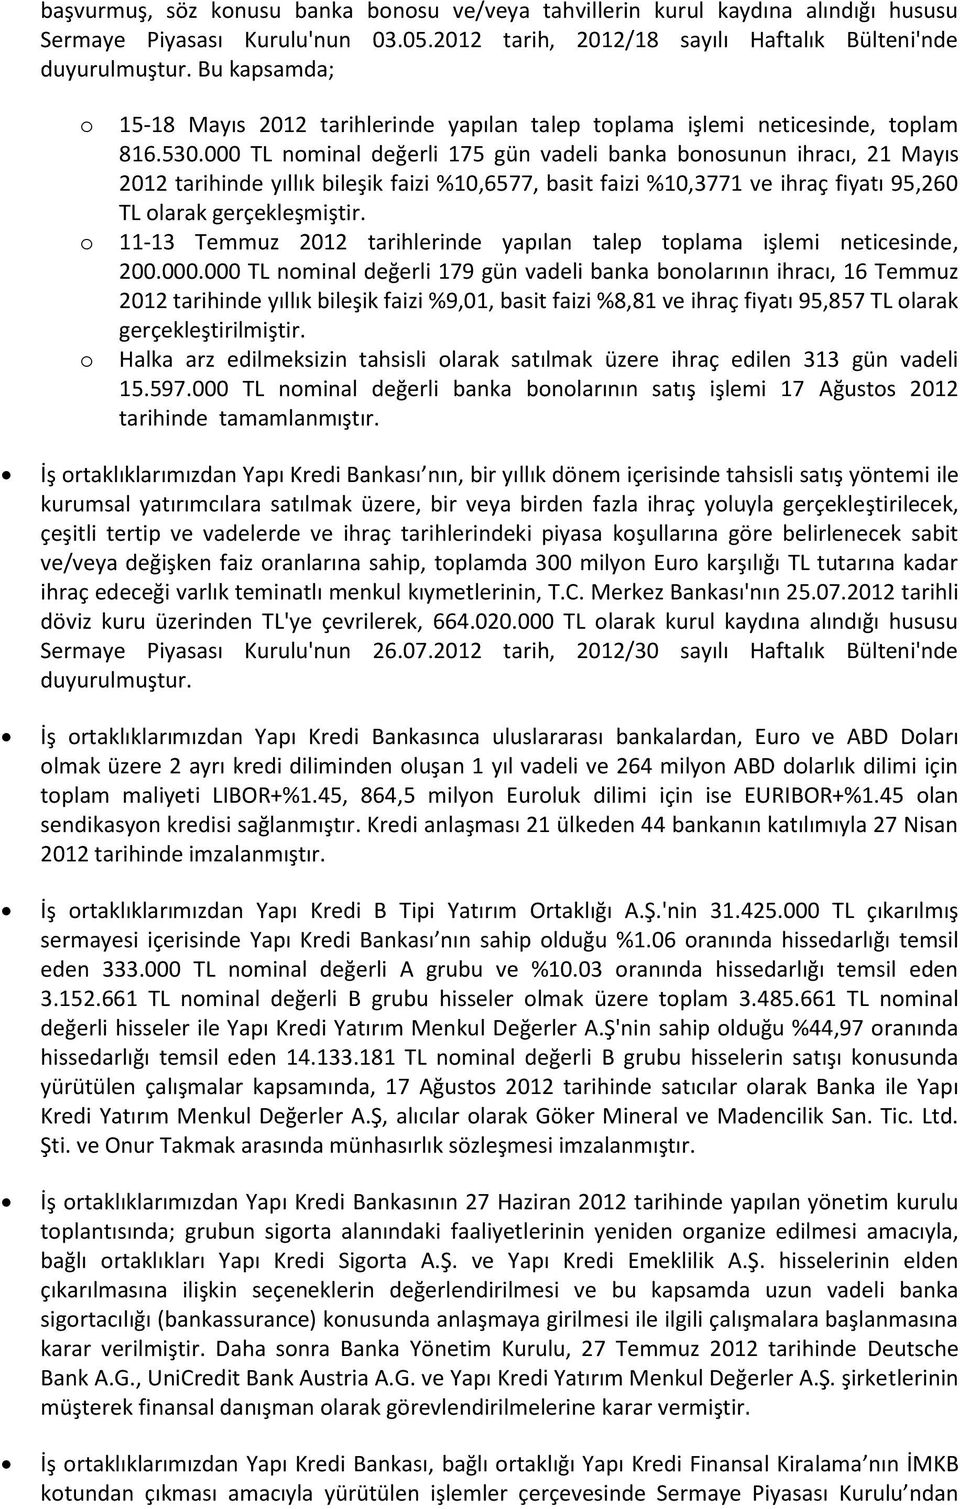 000 TL nminal değerli 175 gün vadeli banka bnsunun ihracı, 21 Mayıs 2012 tarihinde yıllık bileşik faizi %10,6577, basit faizi %10,3771 ve ihraç fiyatı 95,260 TL larak gerçekleşmiştir.